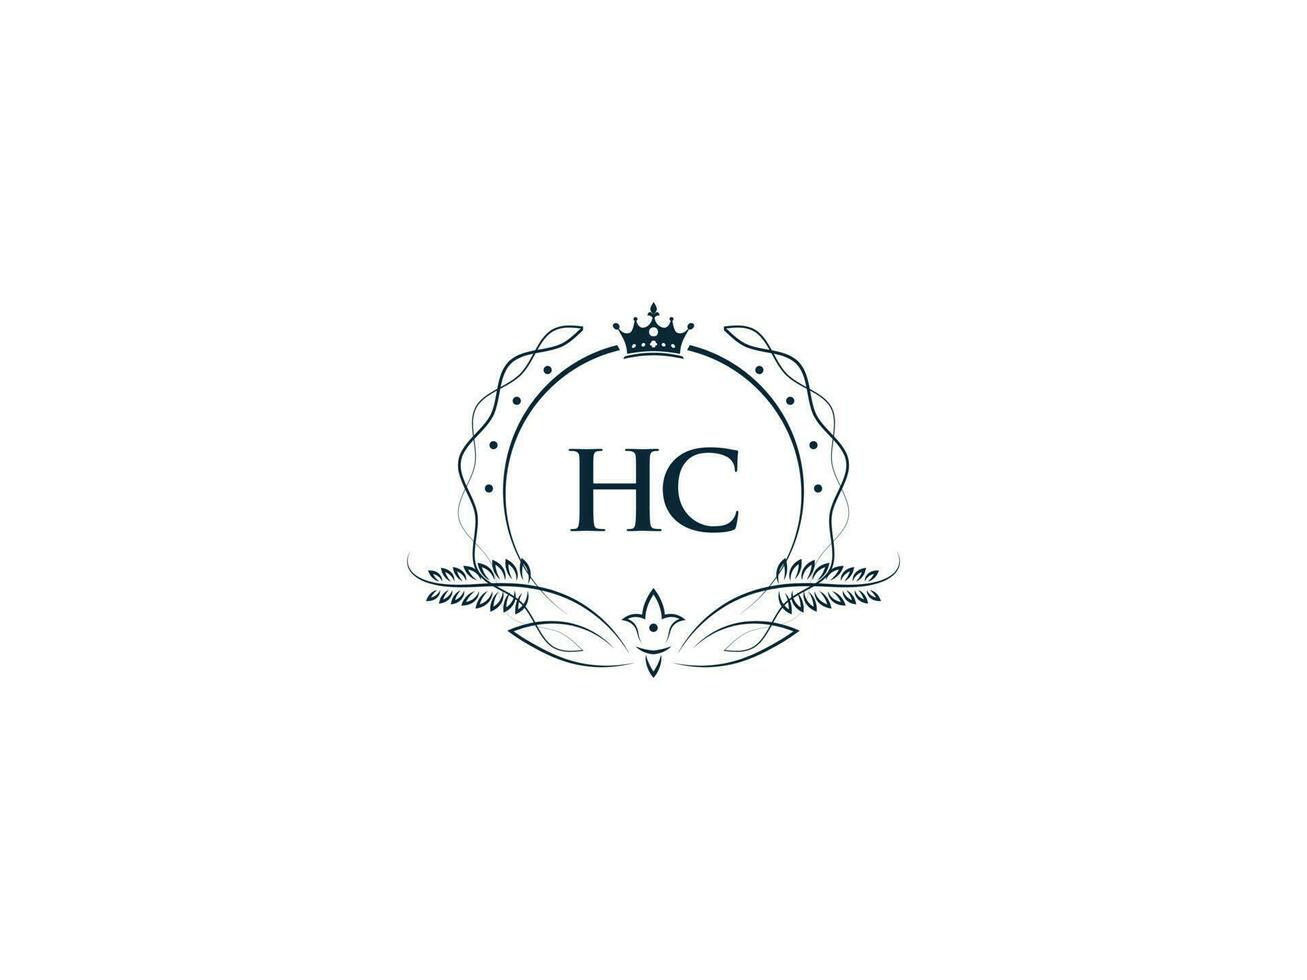 féminin couronne hc Roi logo, initiale hc ch logo lettre vecteur art